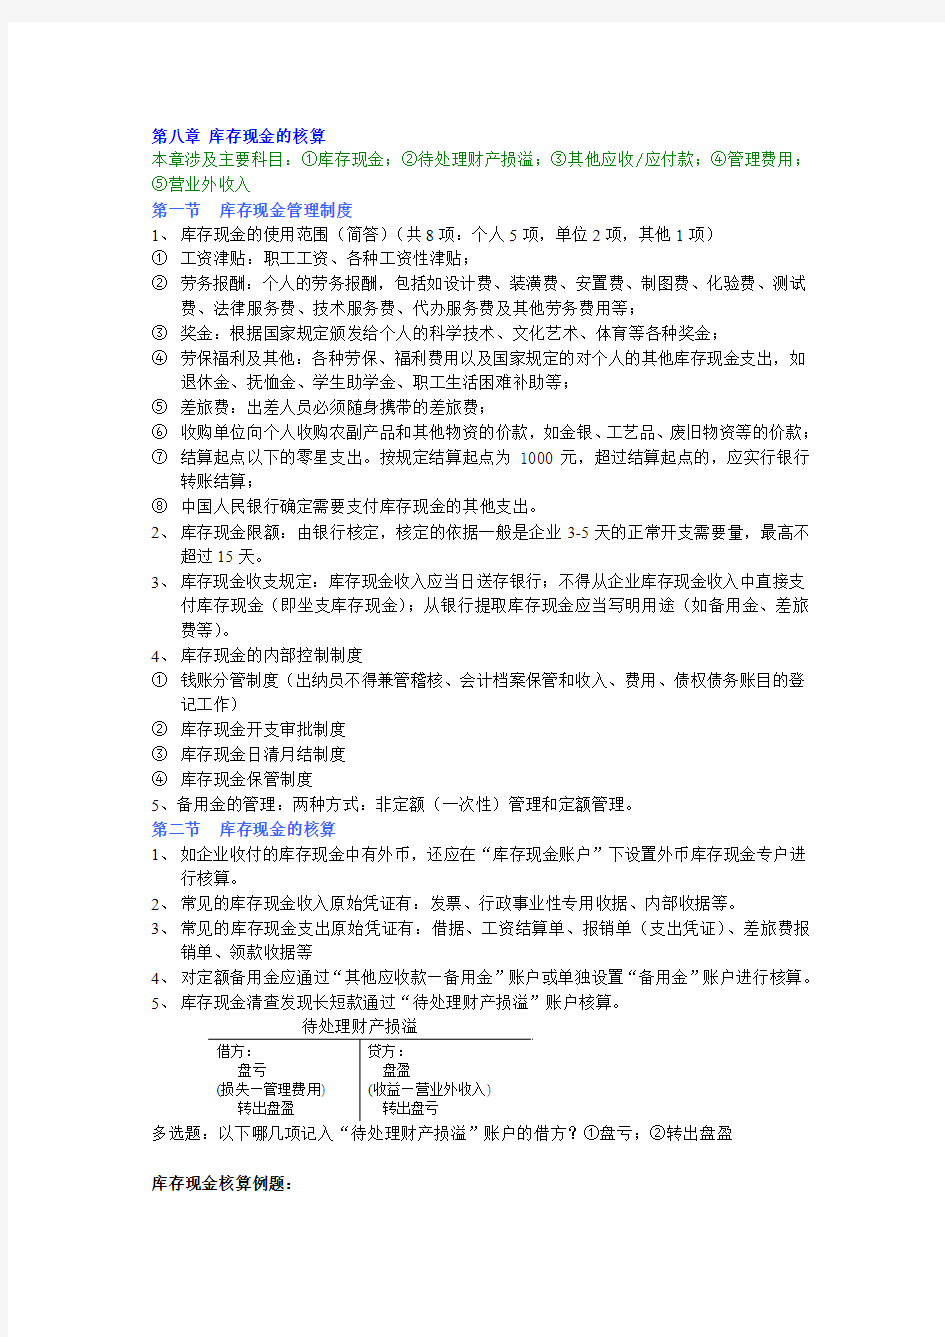 会计基础辅导班笔记(8至16章)(孙老师提供20100131)